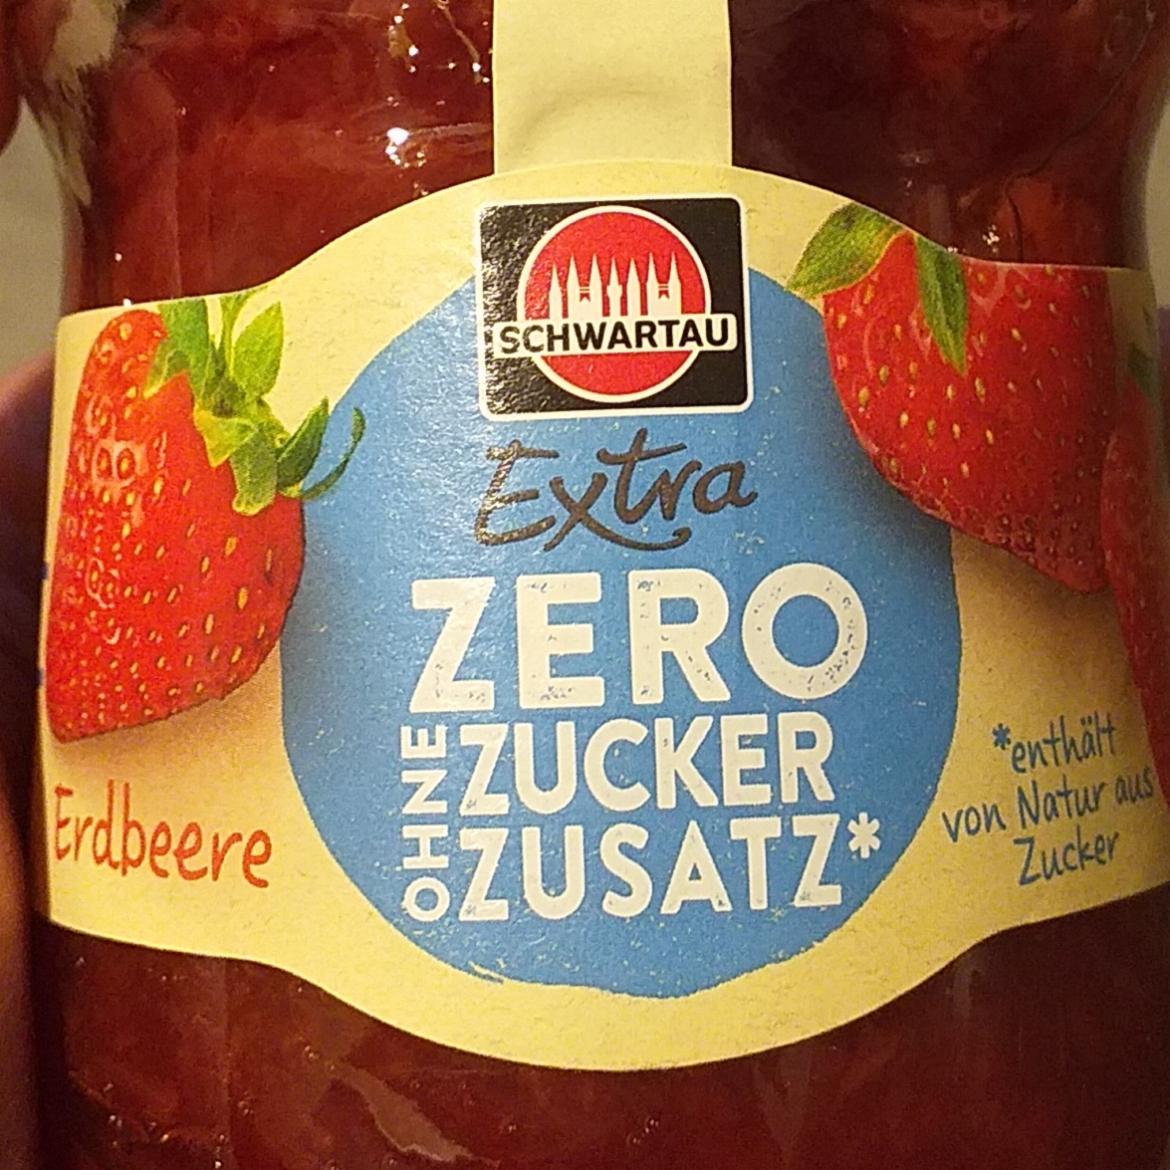 Képek - Extra zero ohne zucker zusatz erdbeere Schwartau